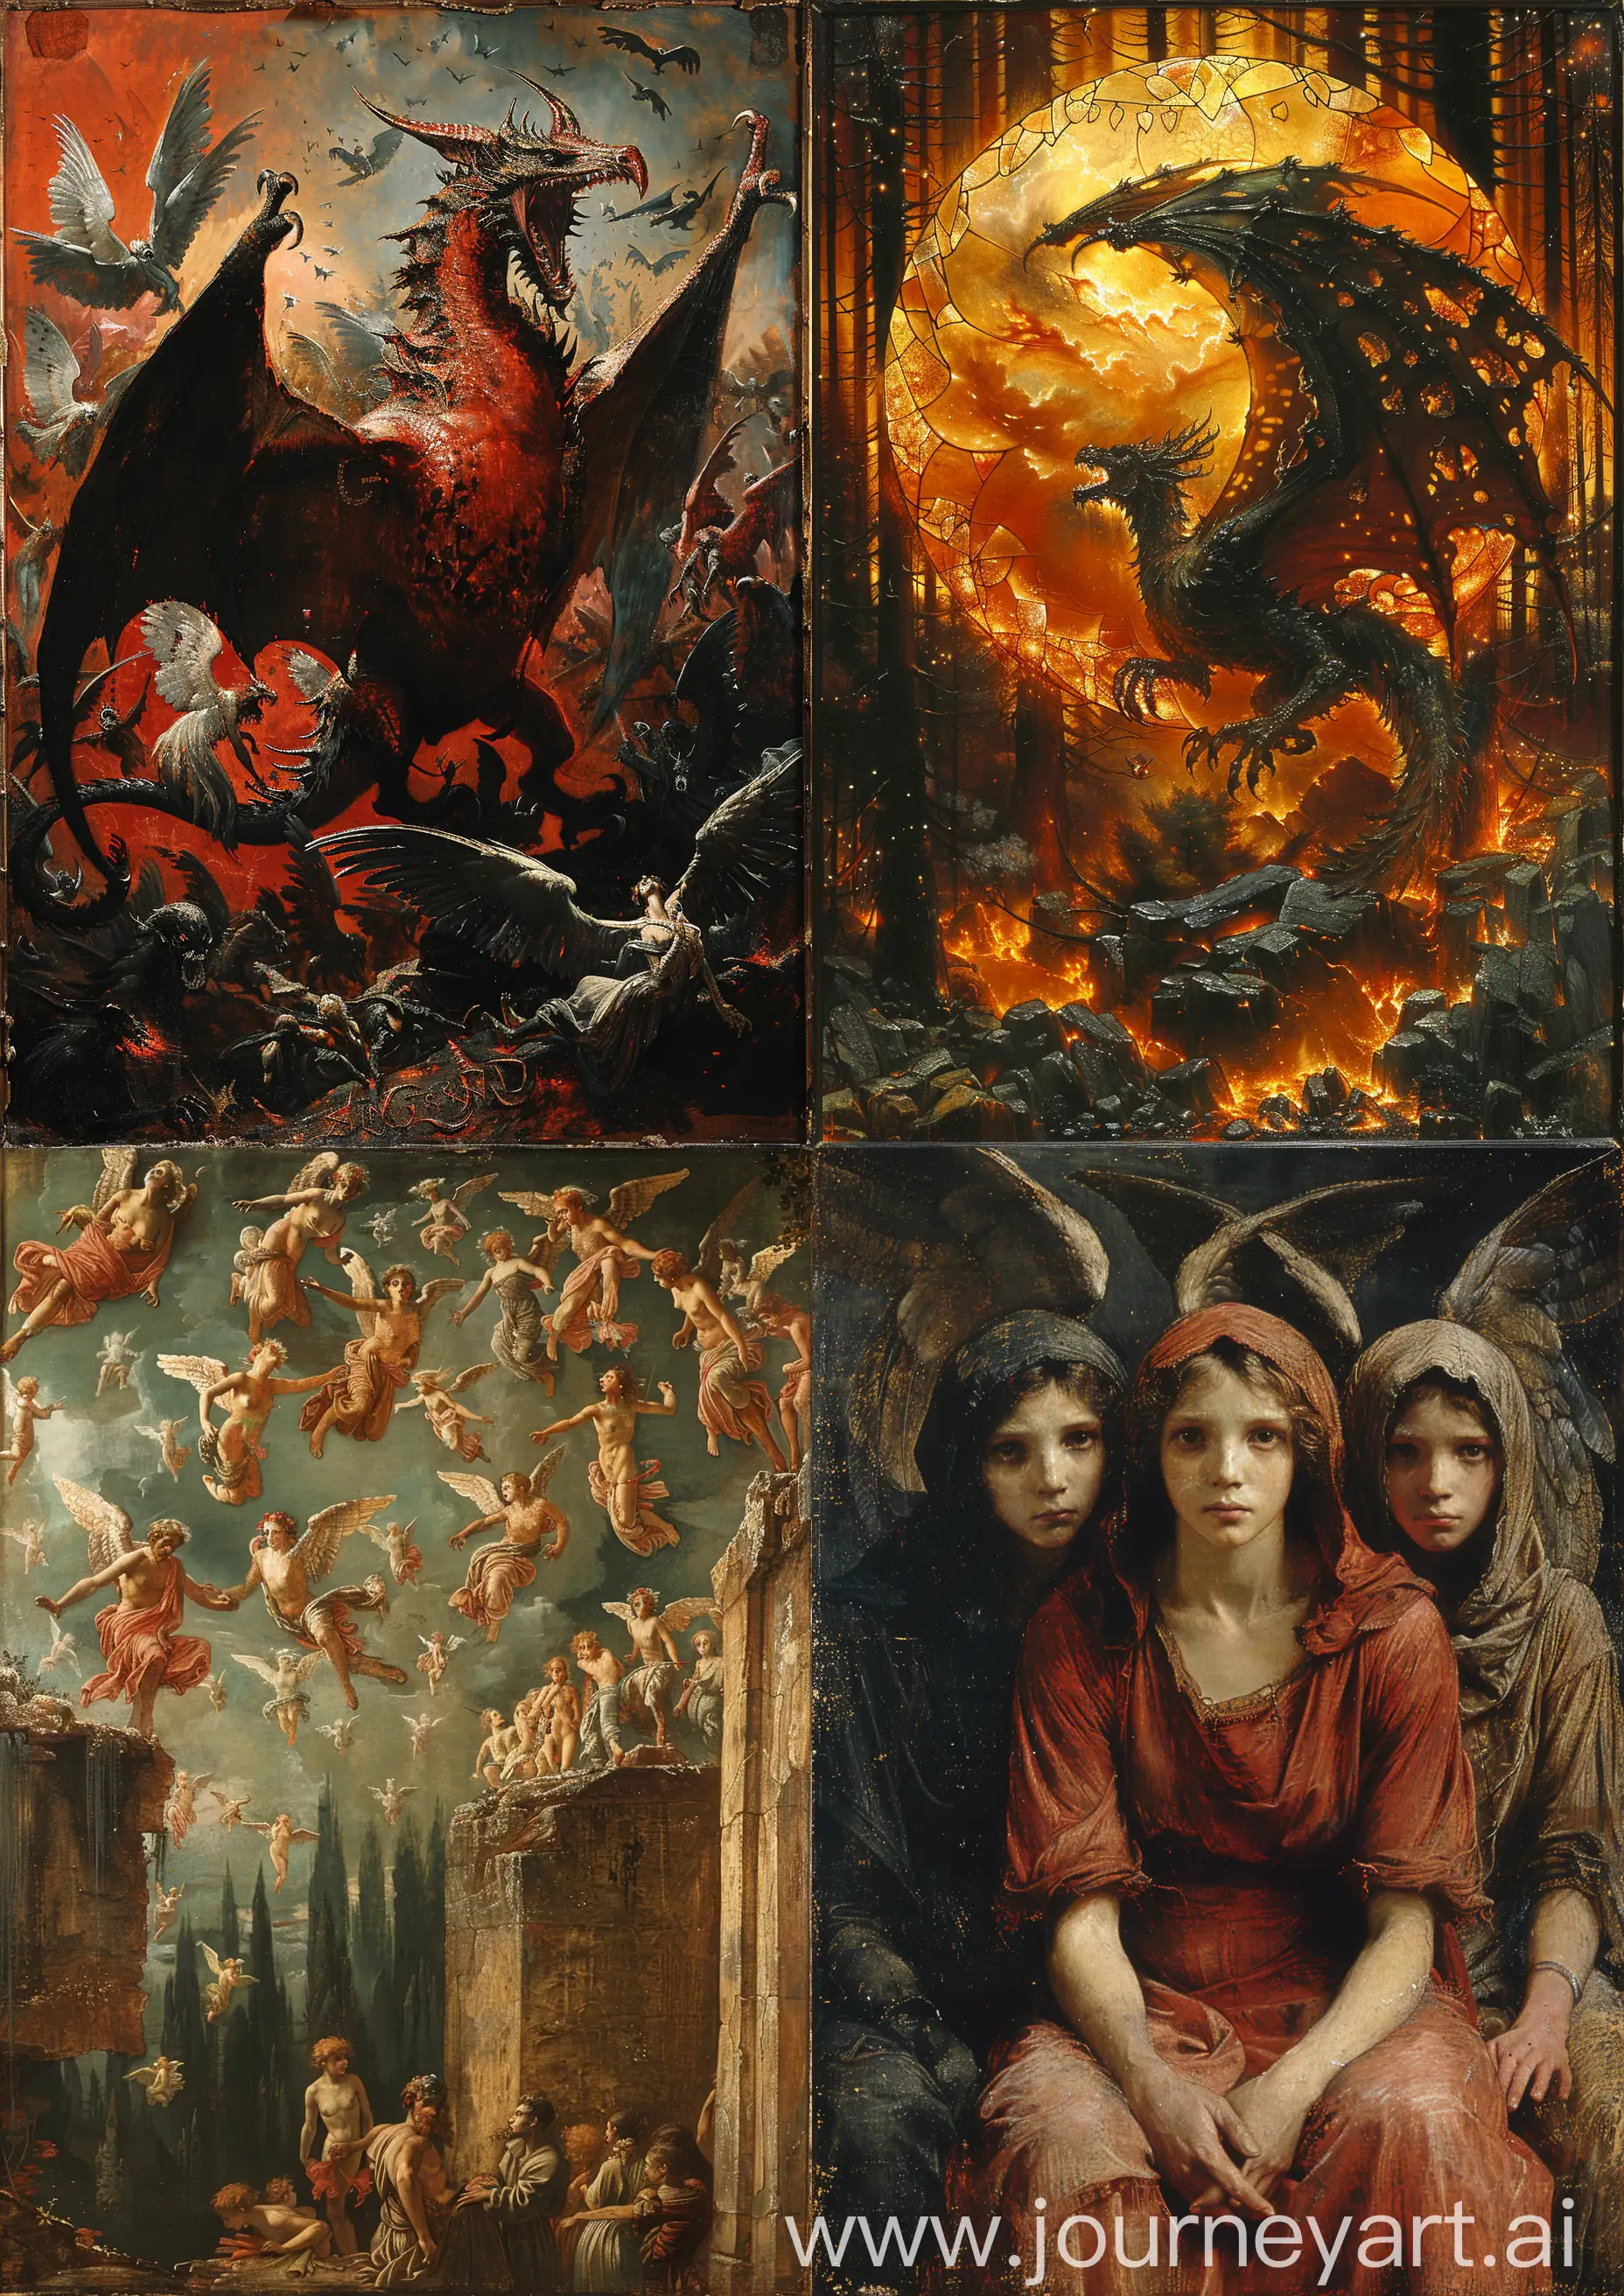 Edward-BurneJones-Scary-Demonic-and-Angelic-Symbols-Painting